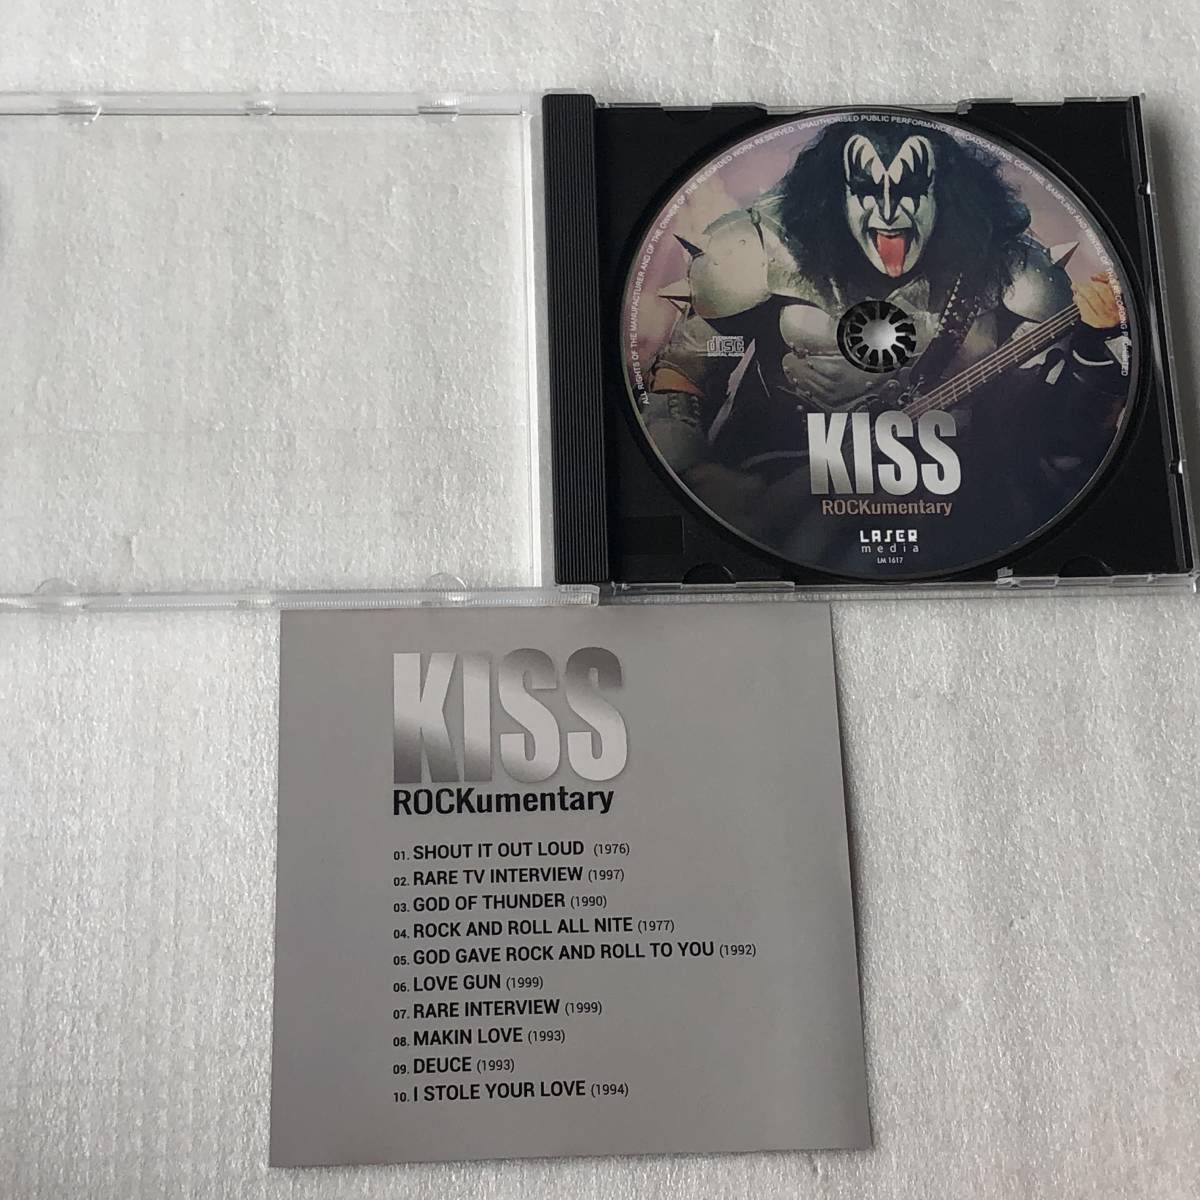 中古CD KISS キッス/Rockumentary コンピ盤(2018年 LM1617) 米国産HR/HM,スタジアムロック系_画像3